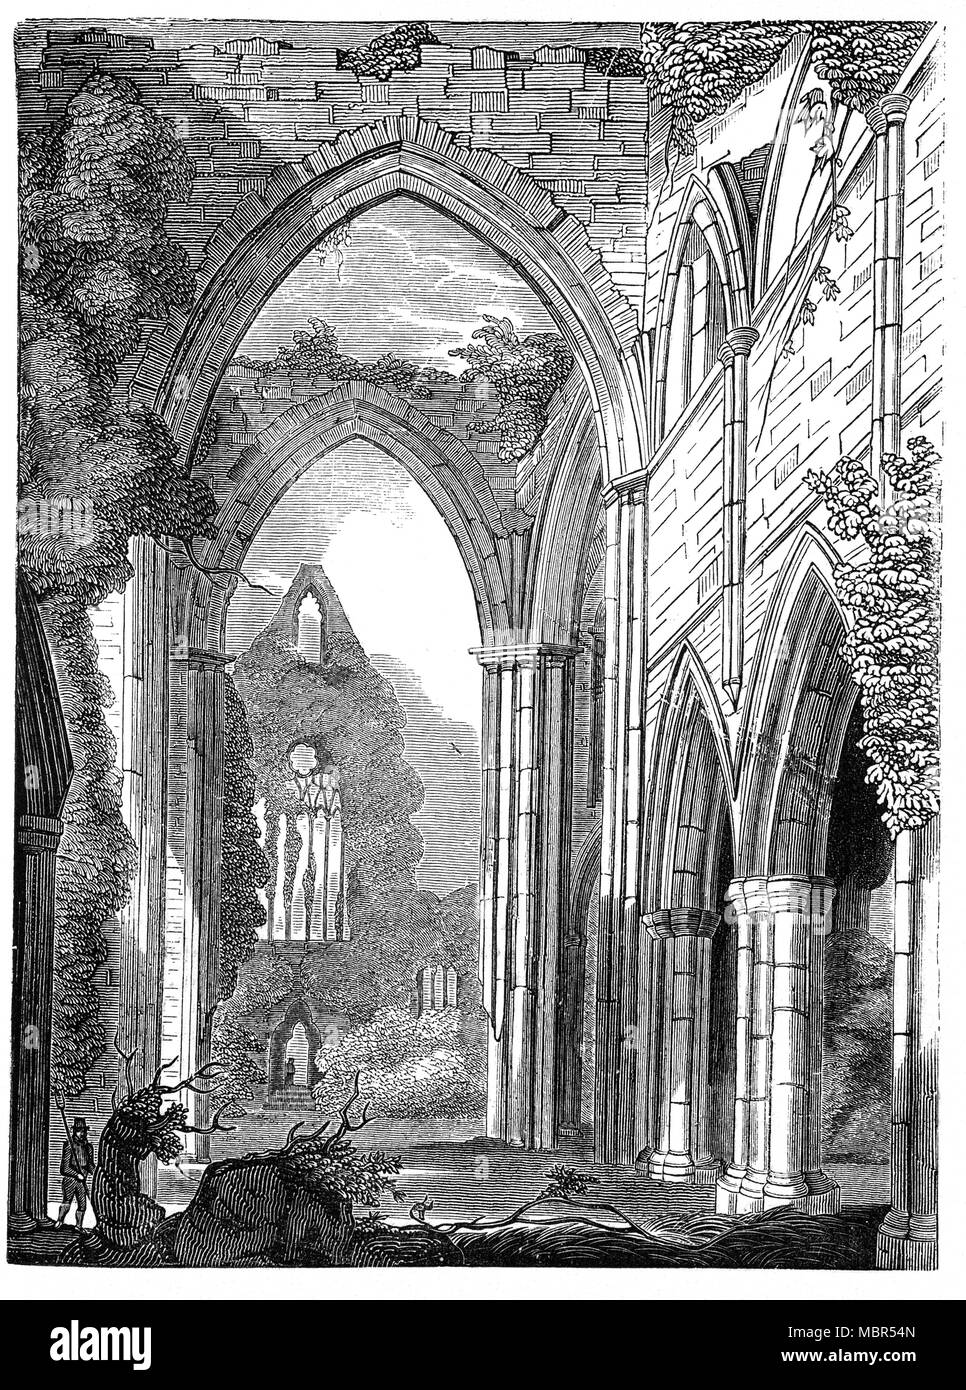 Tintern Abbey è stata fondata da Walter de Clare, signore di Chepstow, il 9 maggio 1131. È situato vicino al villaggio di Tintern nel Monmouthshire, sul Welsh banca del fiume Wye. In 1326 il re Edoardo II abbiamo soggiornato a Tintern per due notti. Nel 1349 la Morte Nera spazzato il paese e divenne impossibile per attrarre nuove reclute per la fraternità dei laici. Essa cadde in rovina dopo la dissoluzione dei monasteri nel XVI secolo, i resti sono stati celebrati in poesia e spesso dipinto da visitatori dal XVIII secolo in poi. Foto Stock